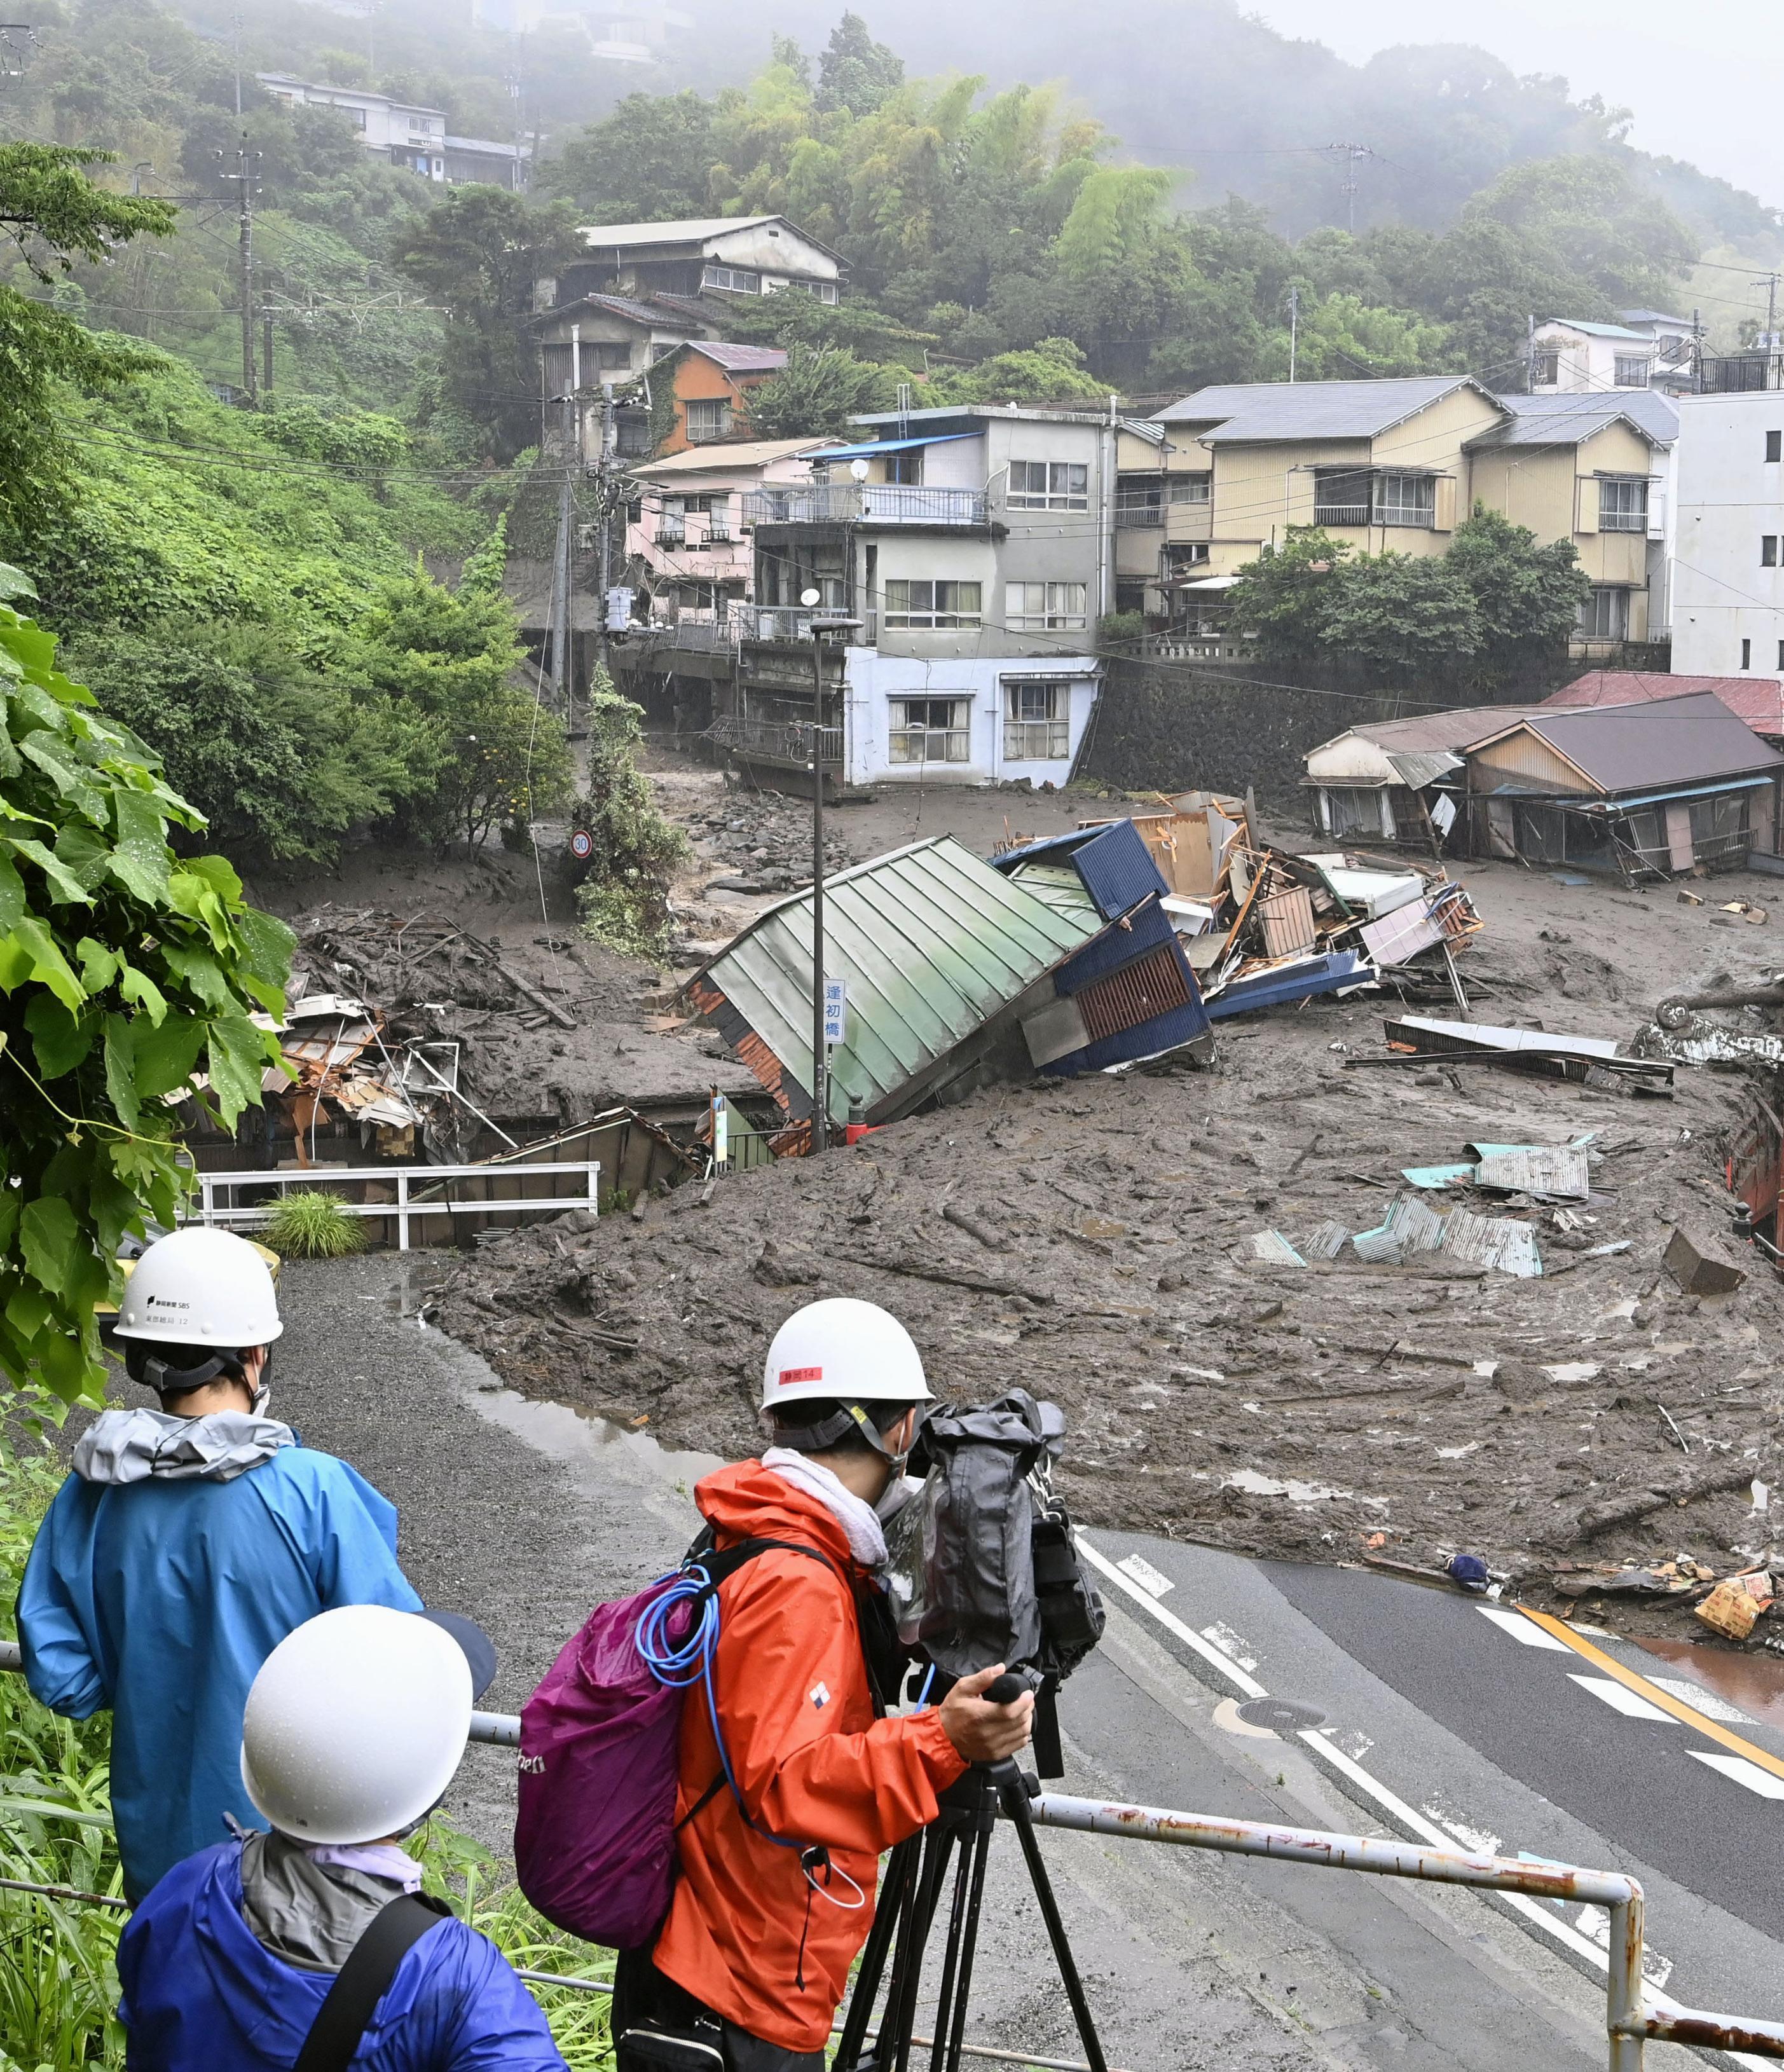 Reportan 20 desaparecidos y dos personas muertas tras deslave en Japón